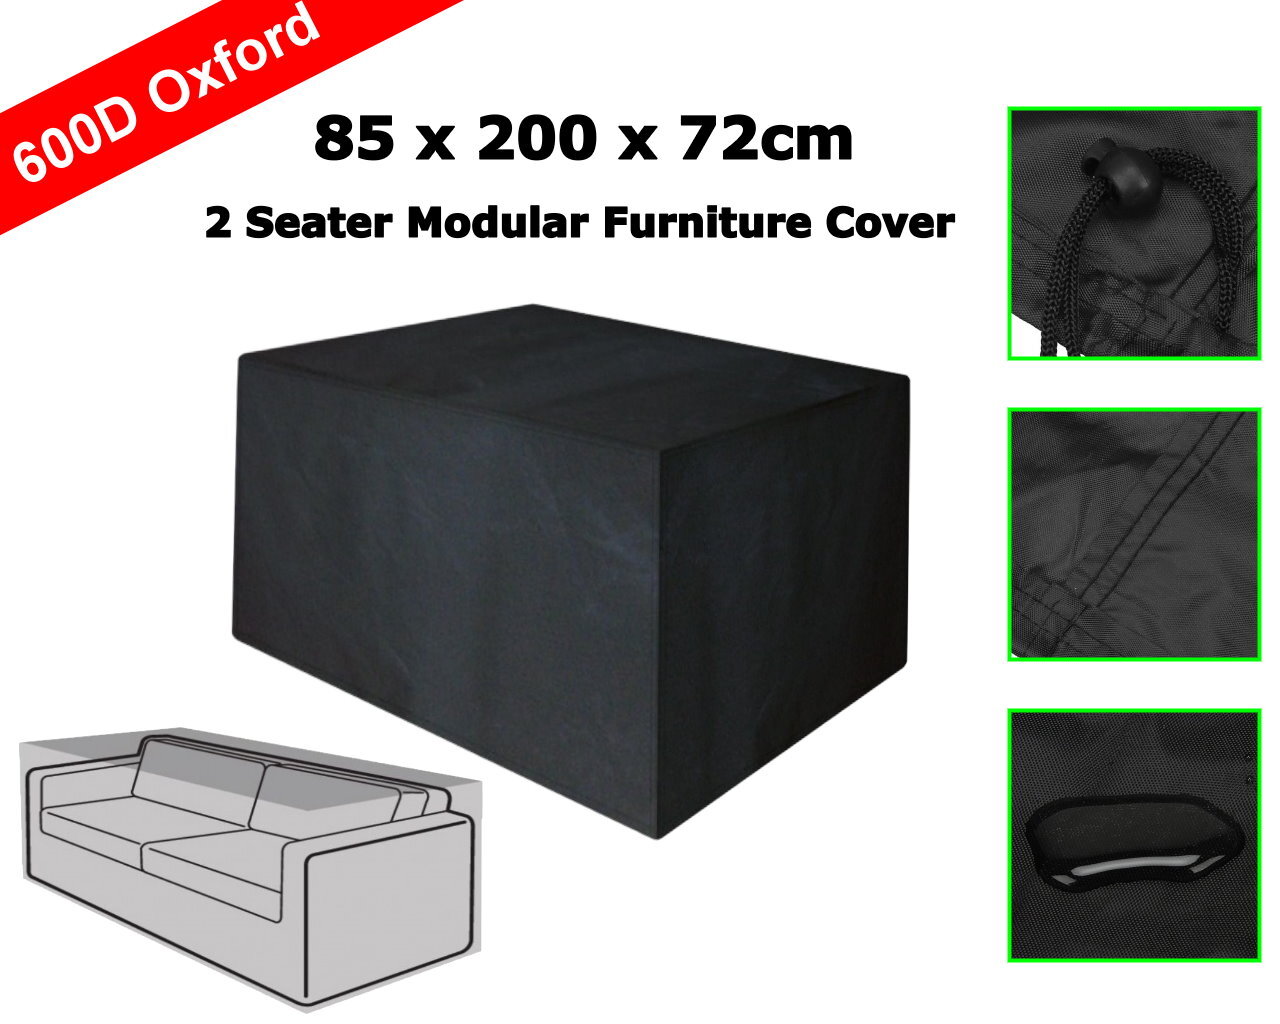 Premium 85 x 200 x 72cm 2 Seater Modular Sofa Outdoor Furniture Cover